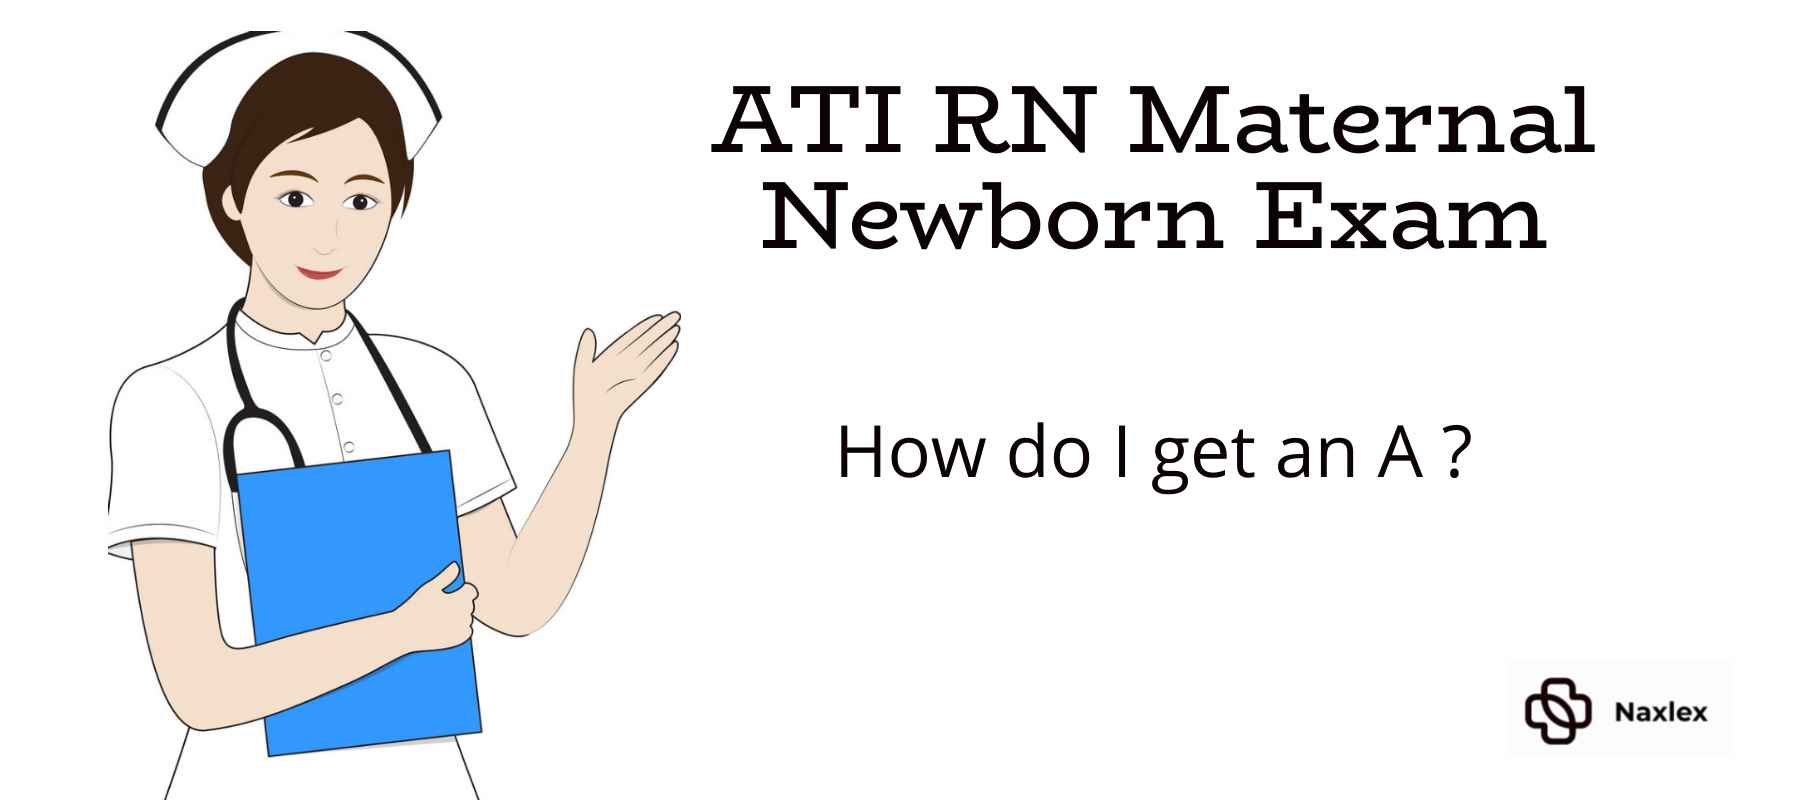 How to Pass ATI Maternal Newborn Exam